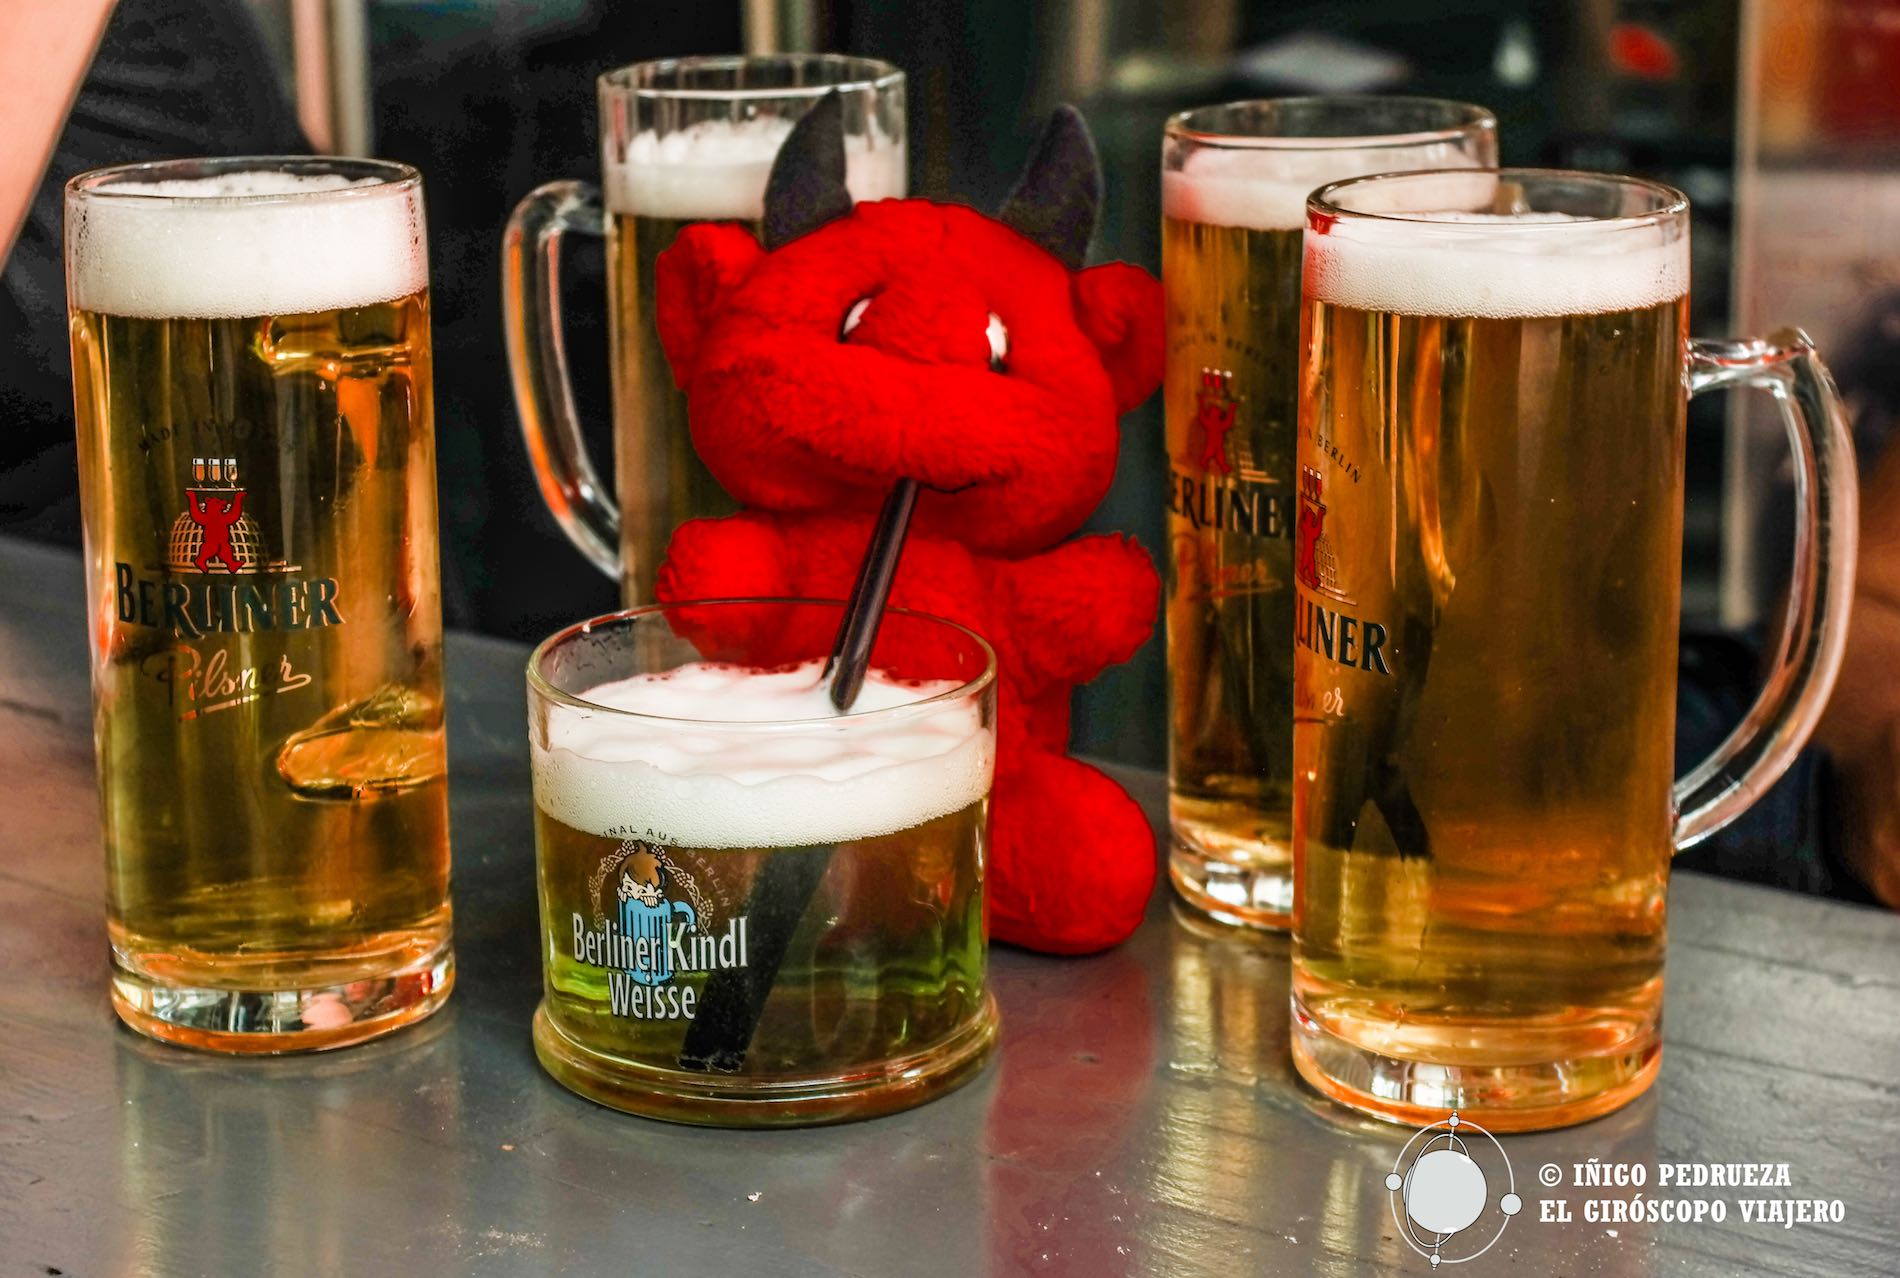 Cervezas berlinesas y la curiosa poción verde Berliner weisser. ©Iñígo Pedrueza.